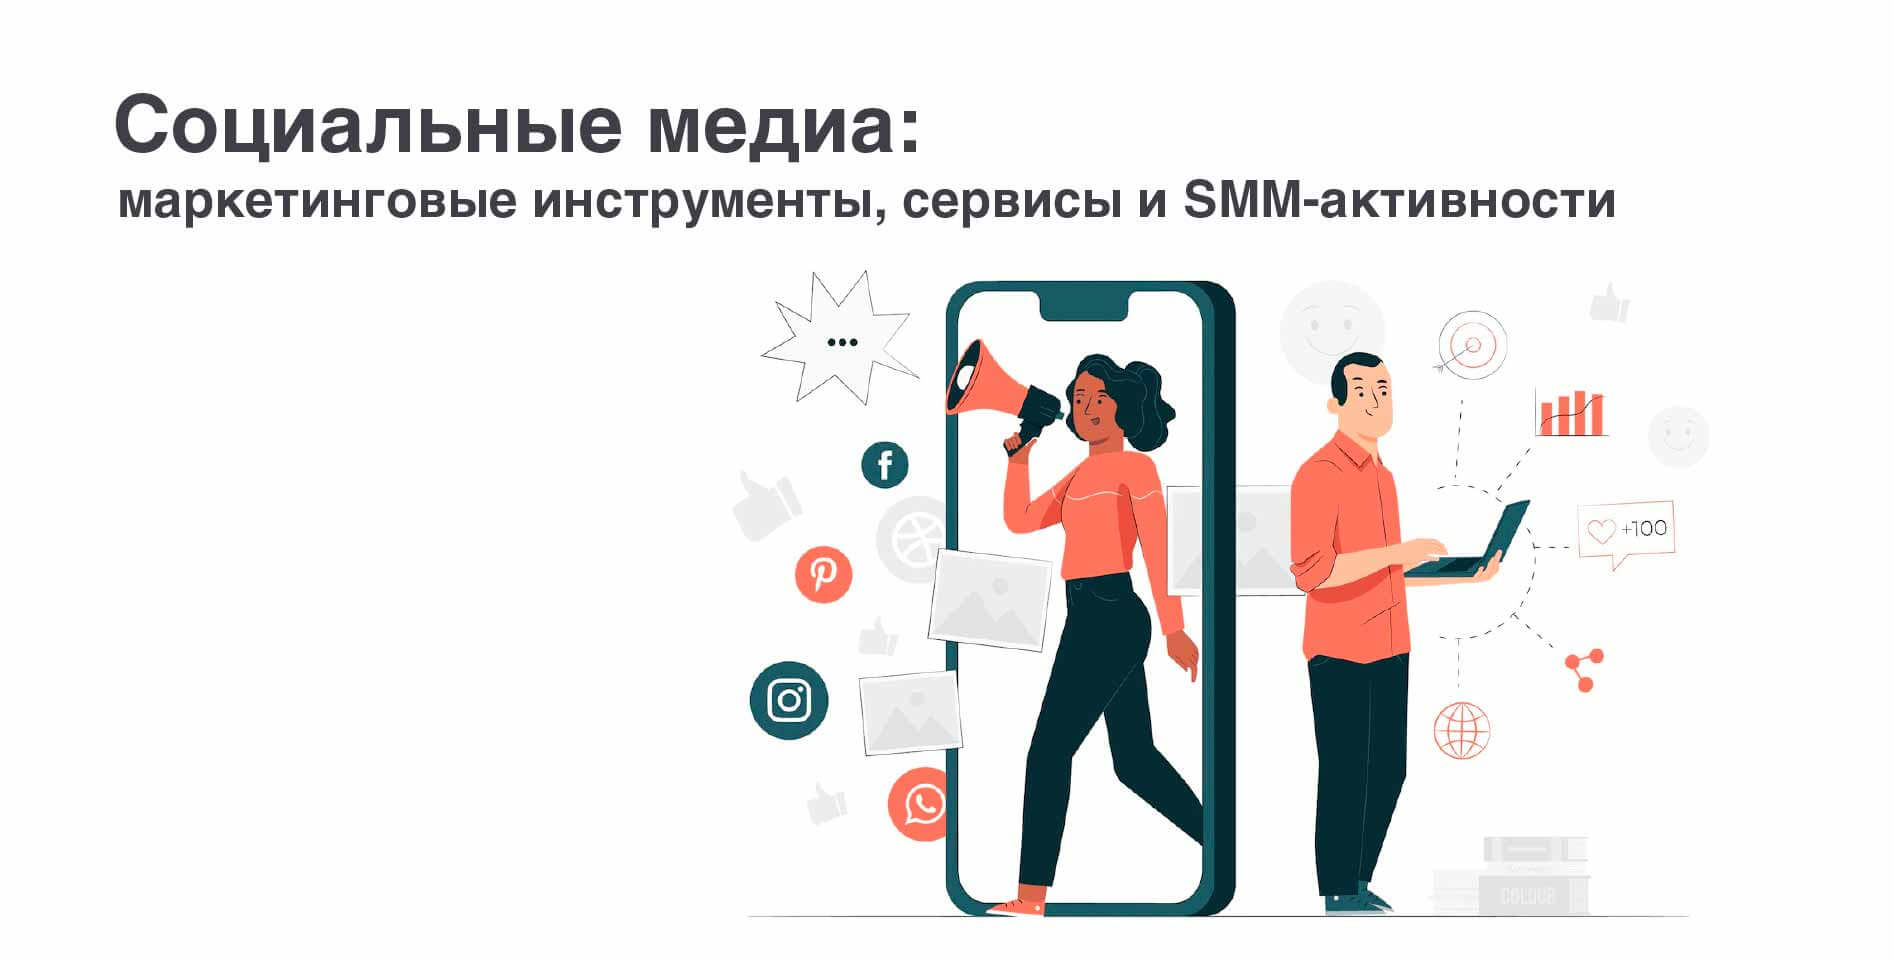  ТГУ — «Социальные медиа: маркетинговые инструменты, сервисы и SMM-активности»